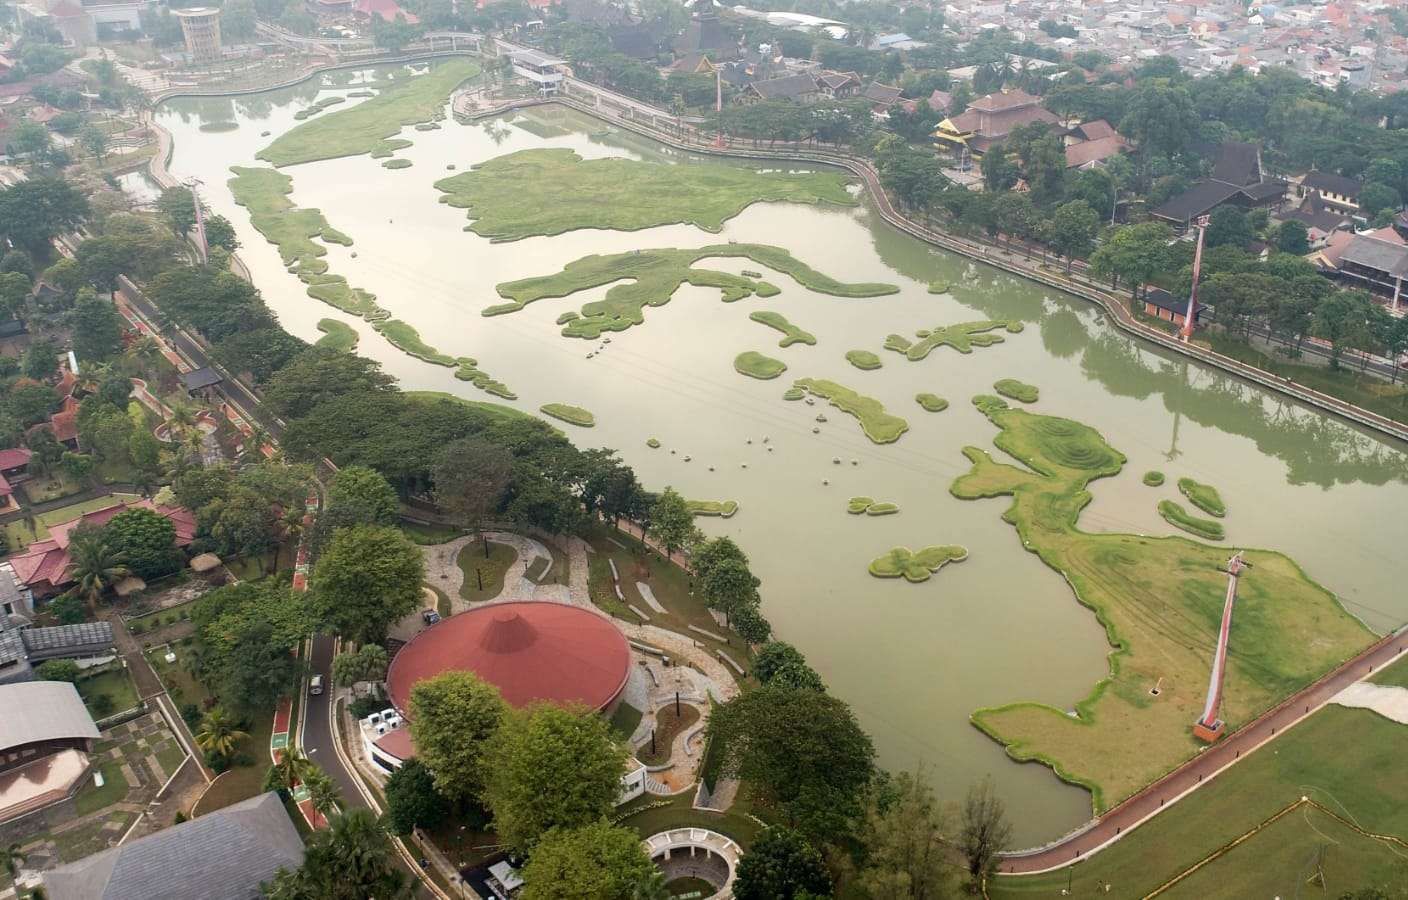 Wajah Baru Taman Mini Indonesia Indah dengan wajah baru,lebih hijau, lebih indah dan lebih rapih. (Foto: PUPR)